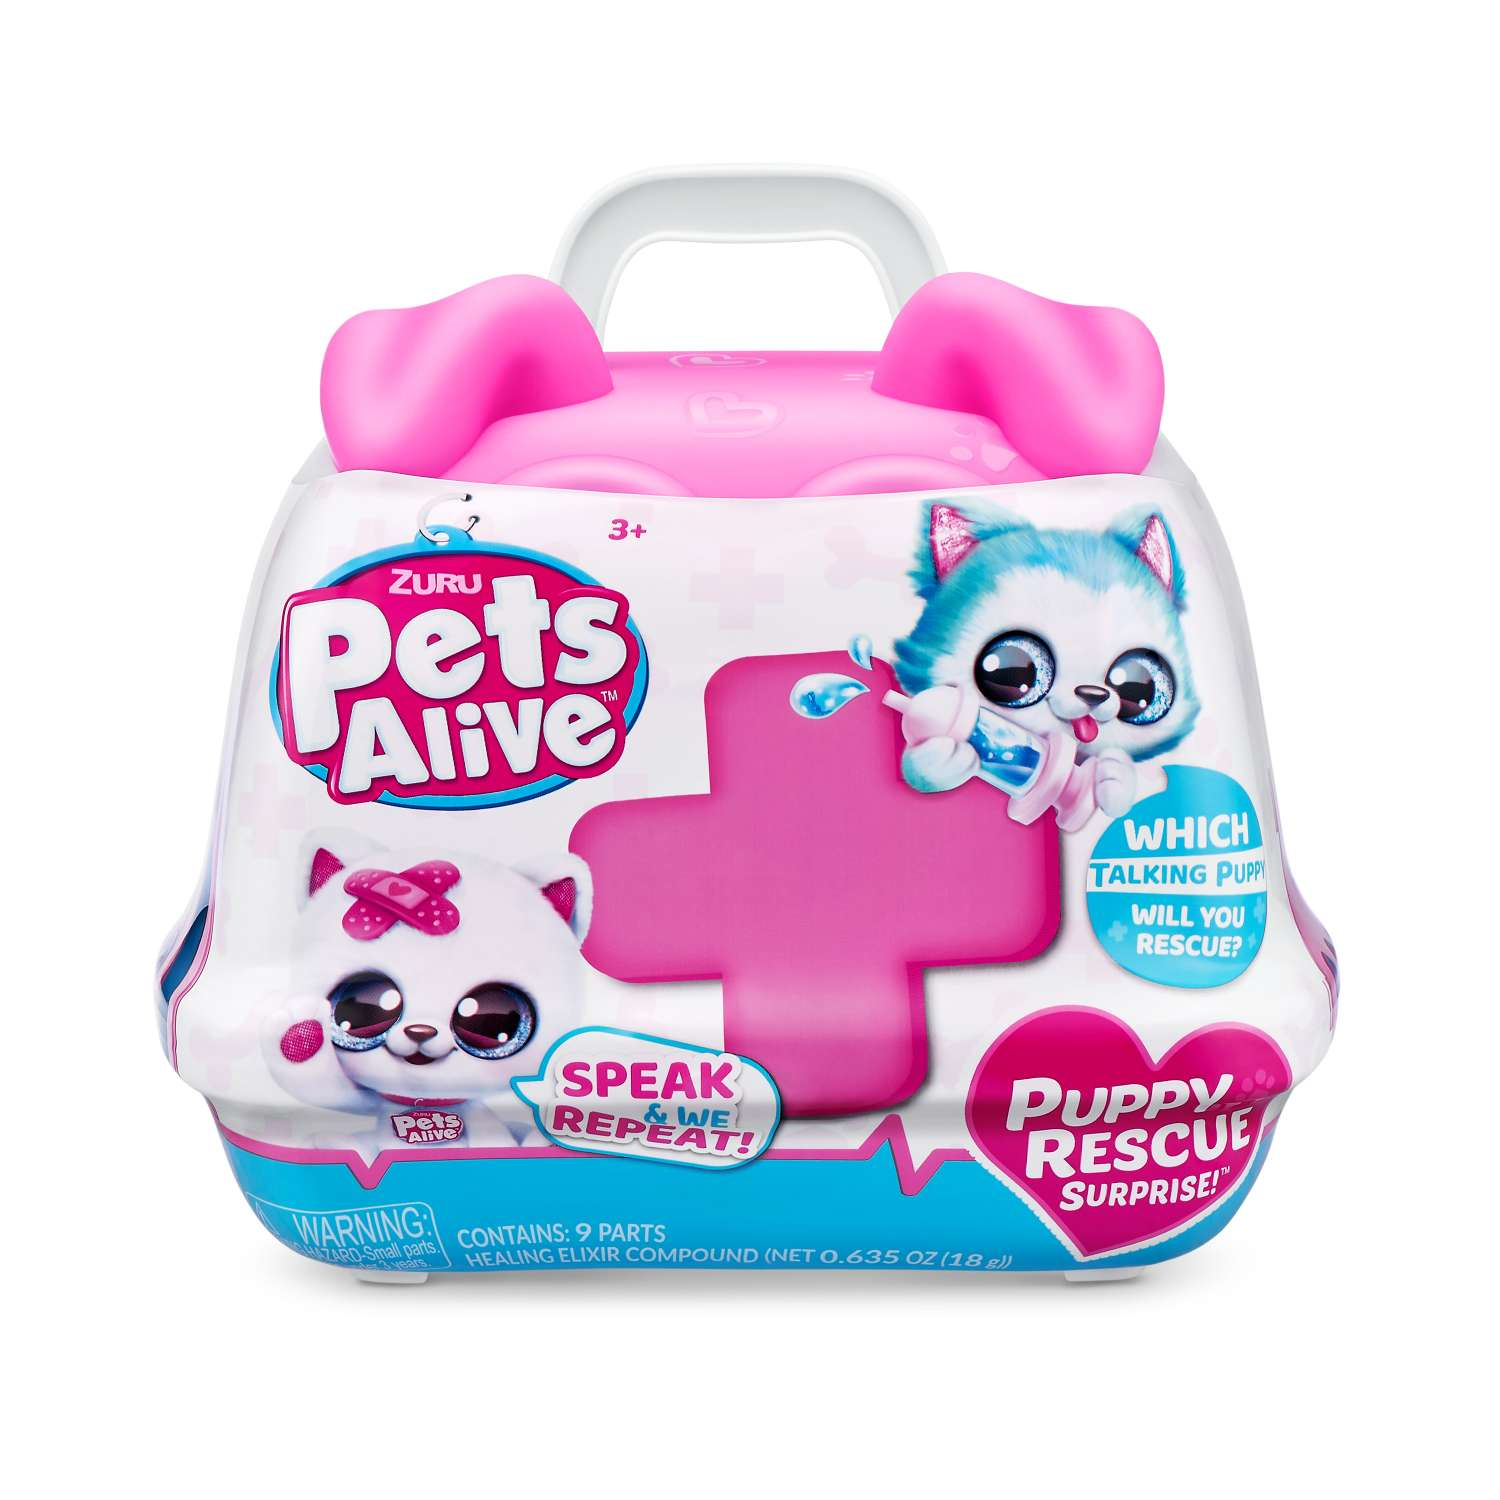 Игровой набор Pets Alive Puppy Rescue в ассортименте игровой набор zuru pets alive puppy rescue surprise 9540 2 дет